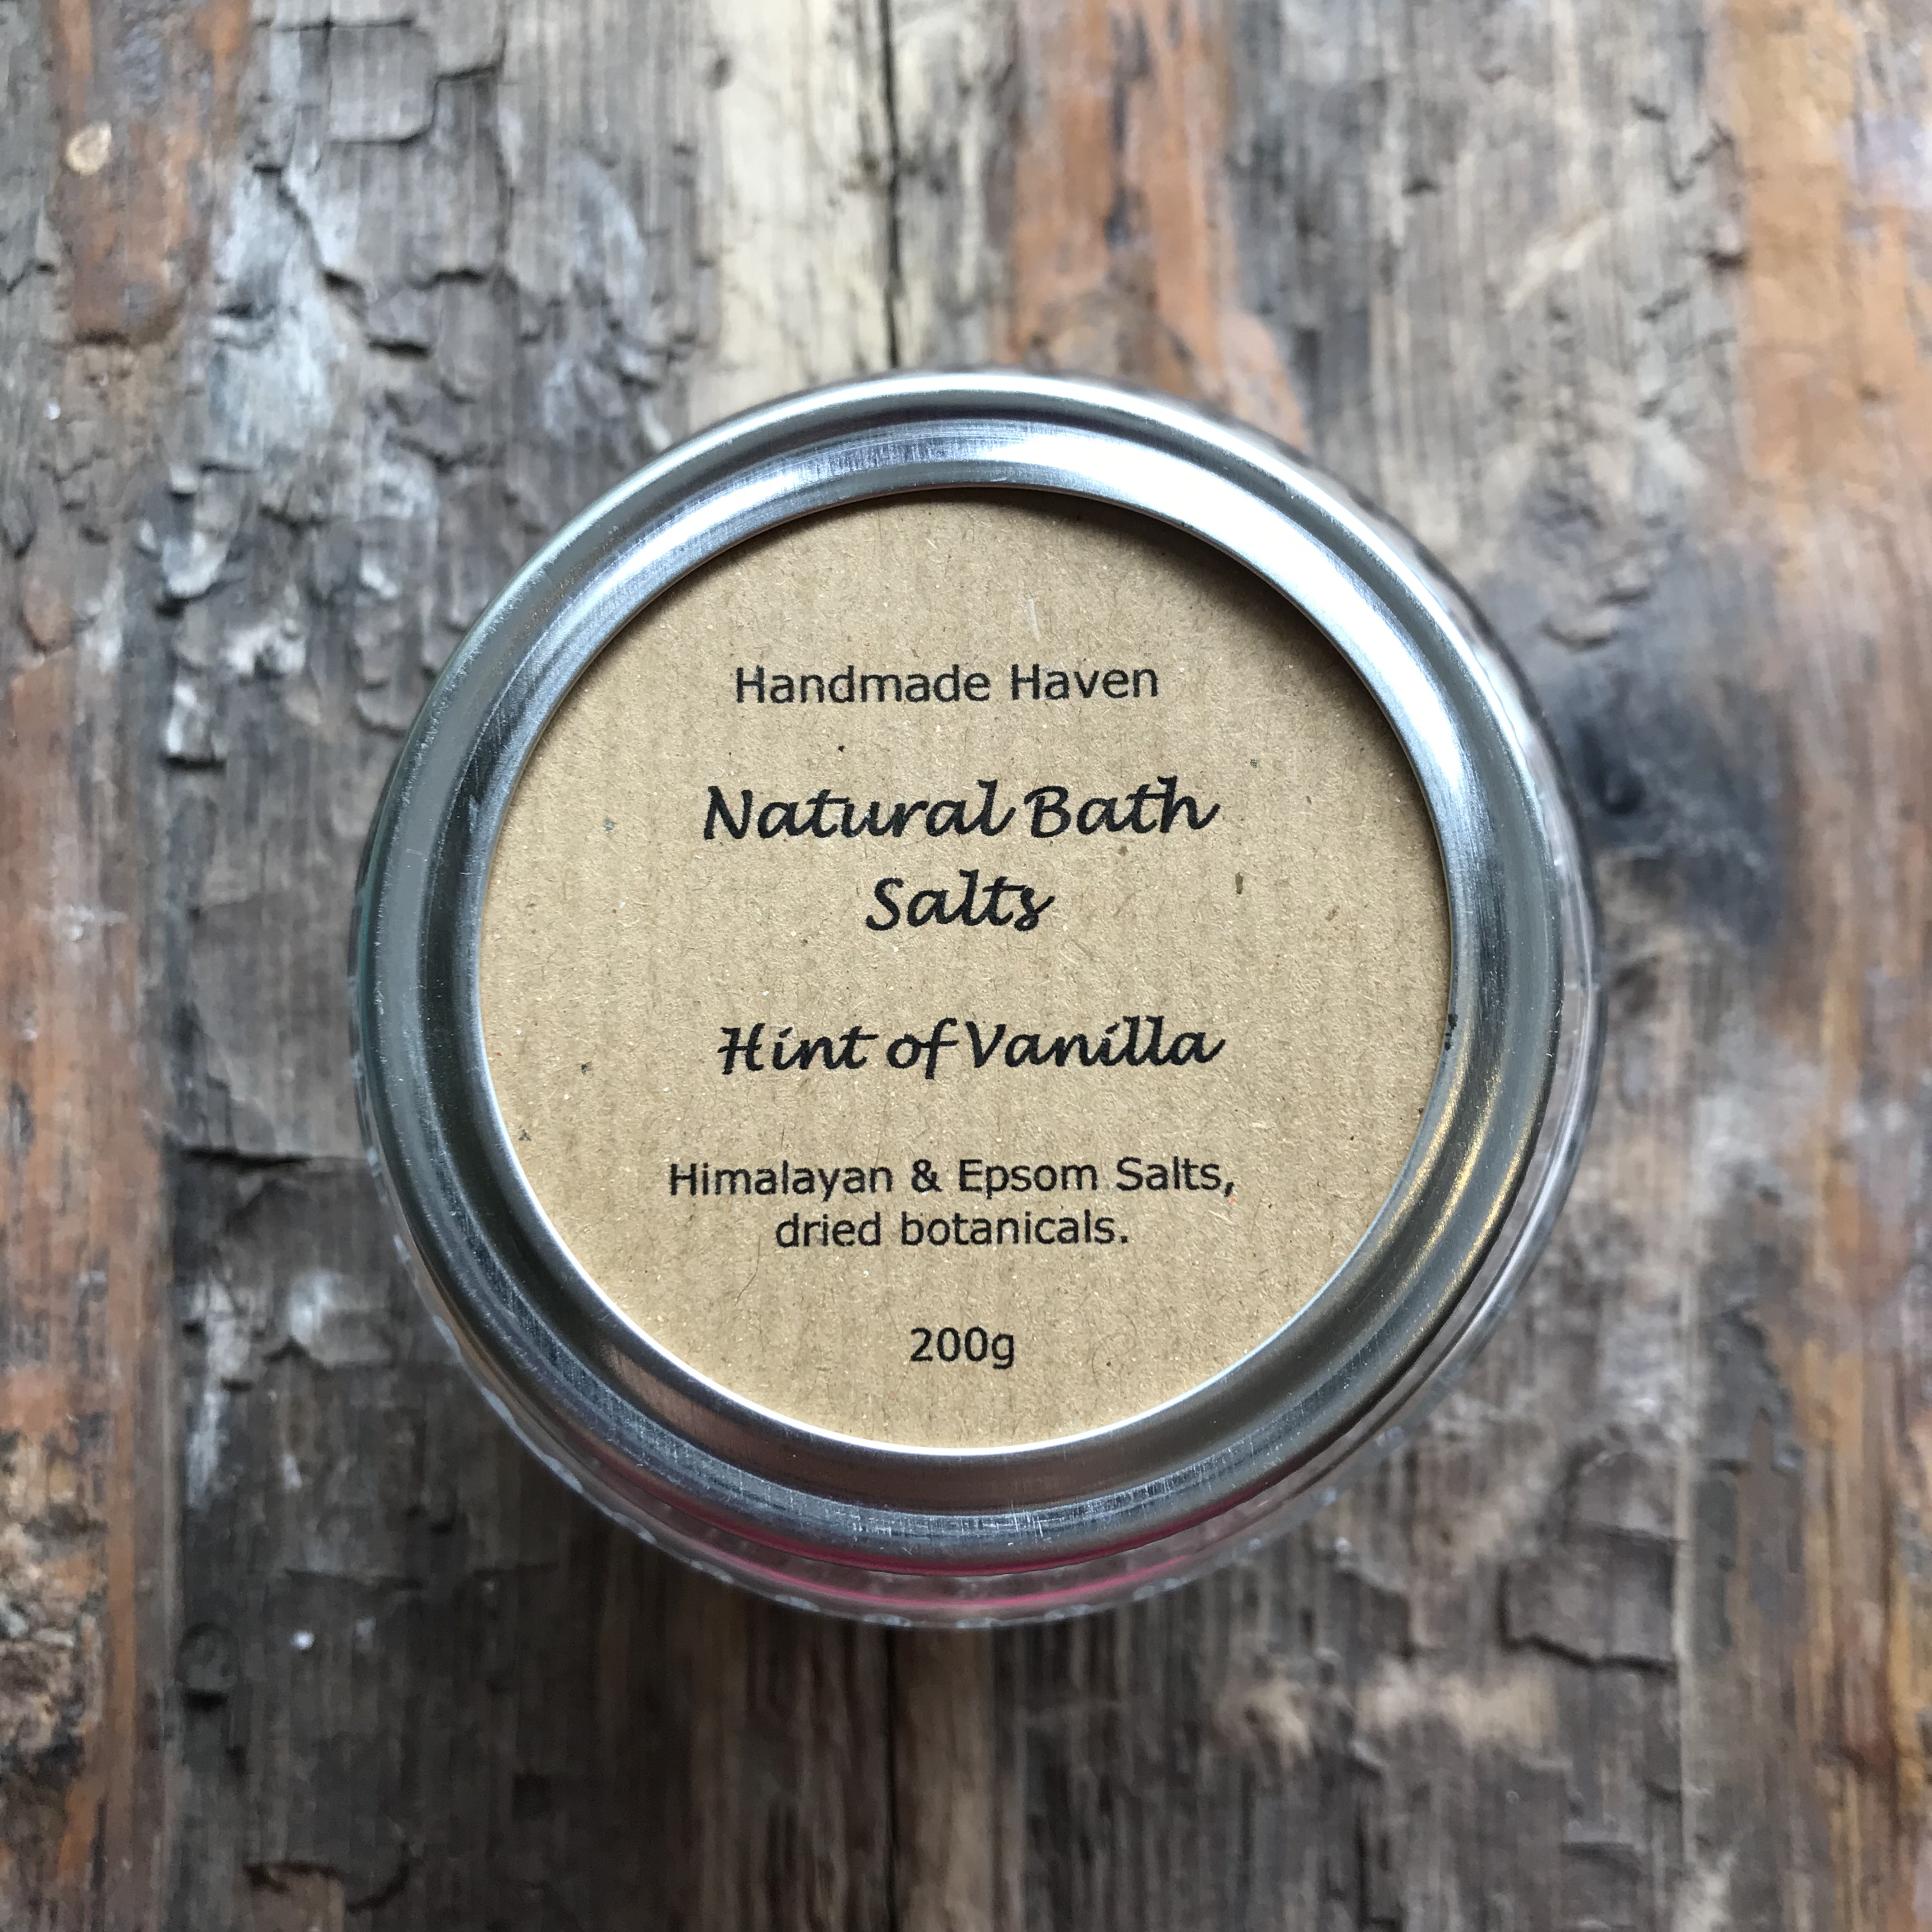 Handmade Haven natural bath salts, Hint of Vanilla. 200g jar.